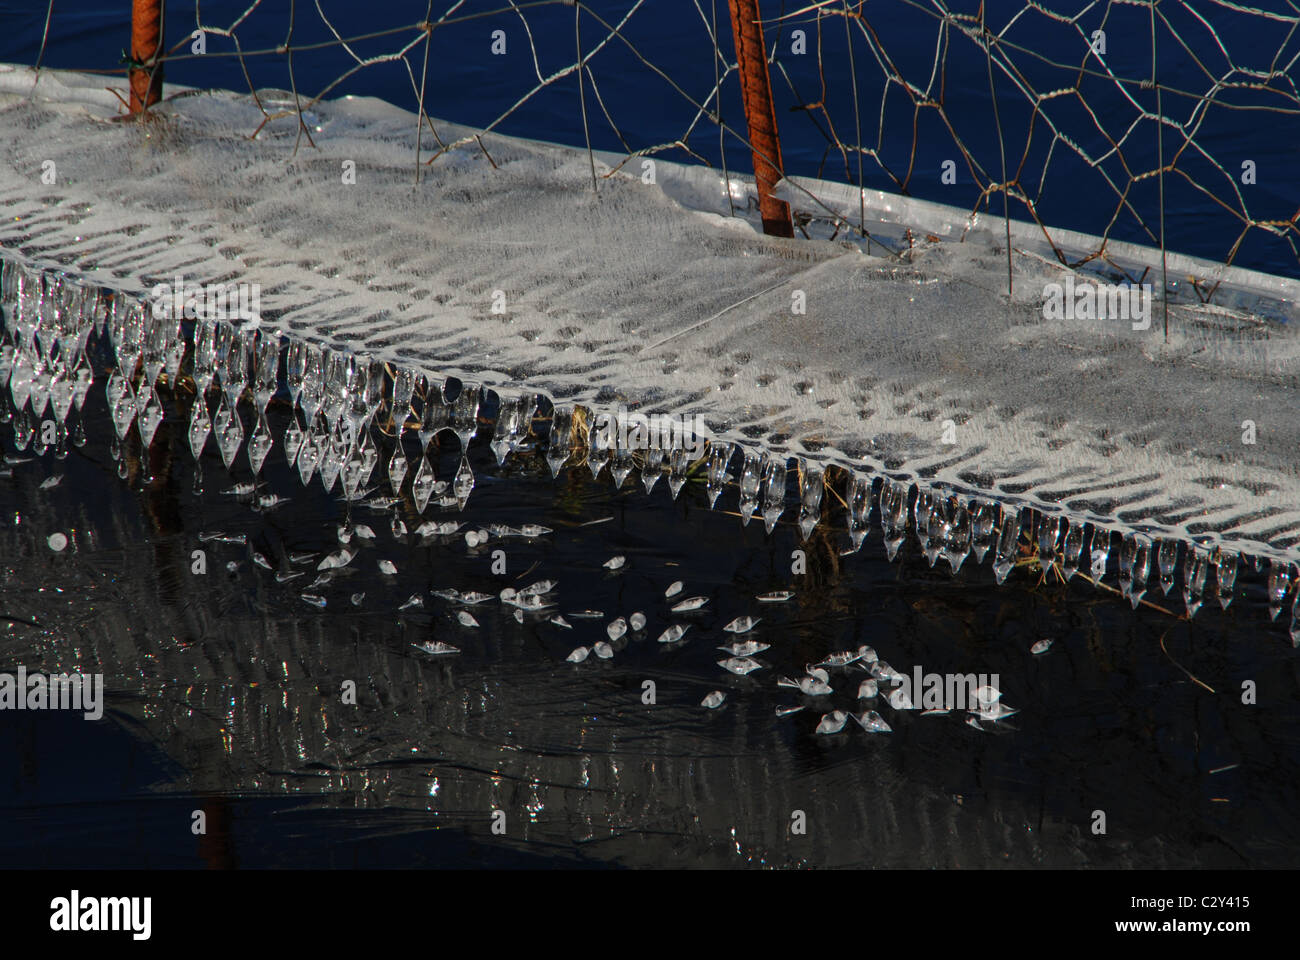 "Sculture di ghiaccio' intorno ad un vecchio-catena collegamento recinto, inverno, acqua, ghiaccio Foto Stock